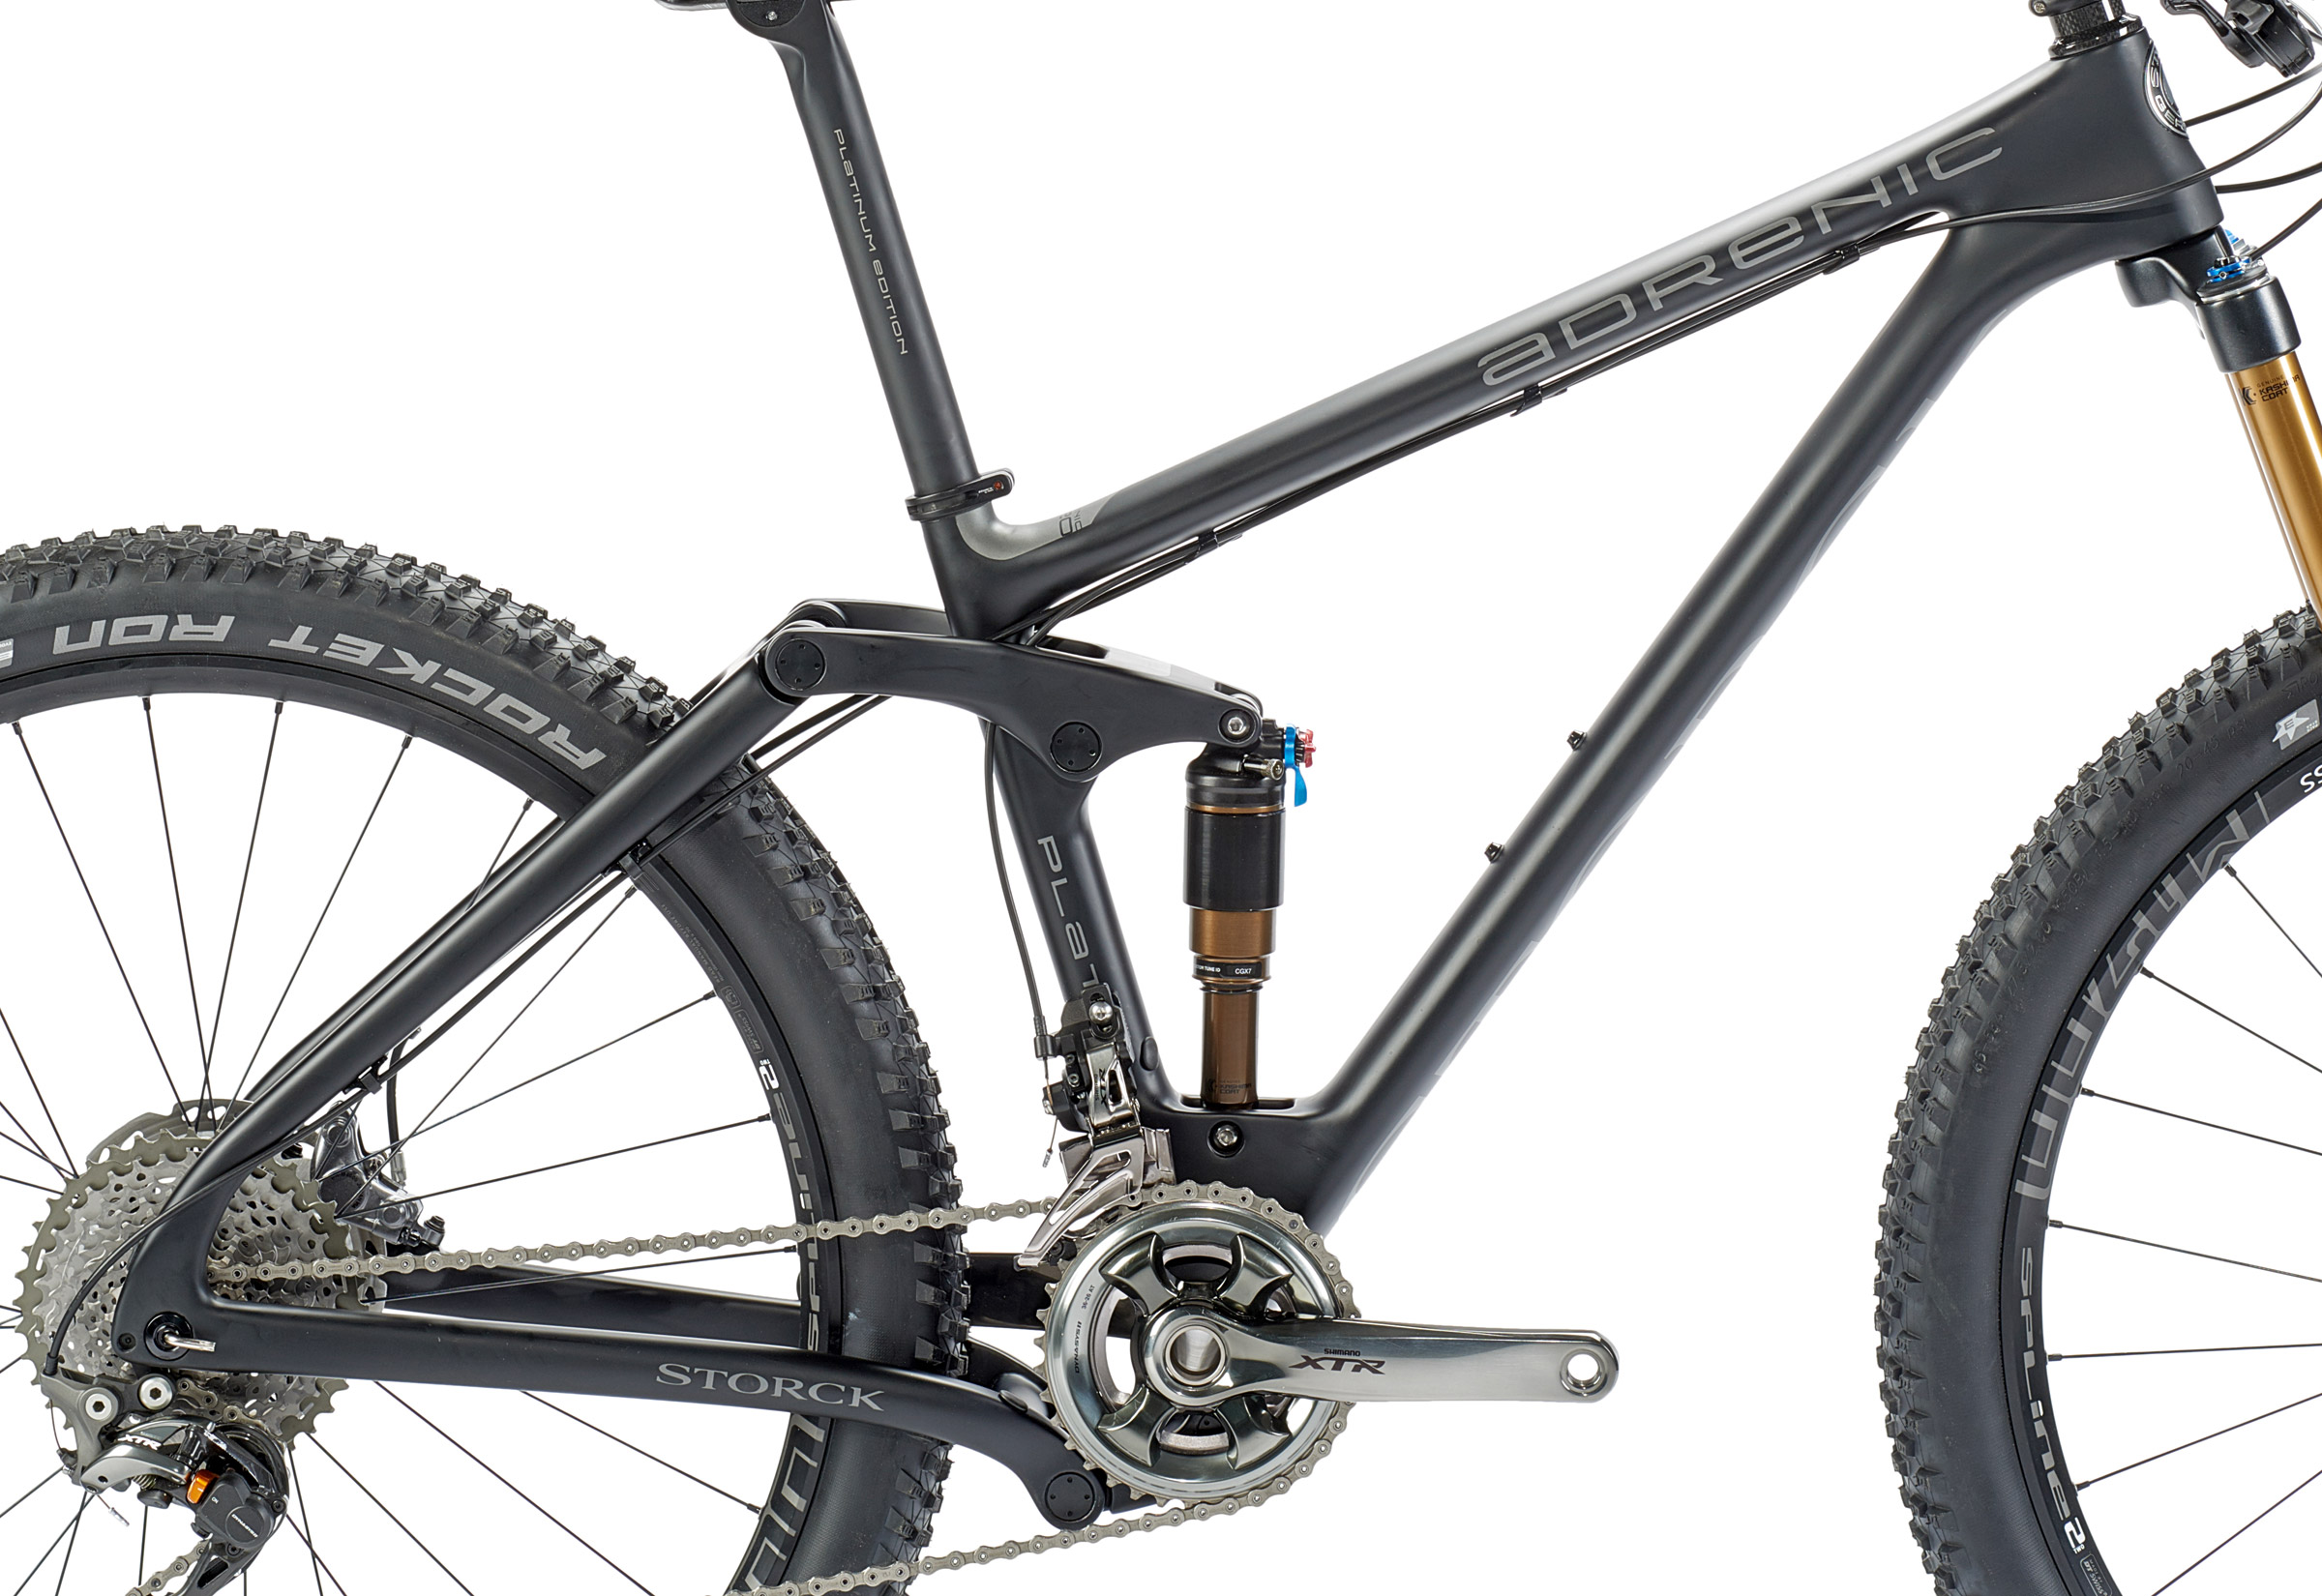 Storck reshapes full-suspension 27.5 Adrenic G1 trail bike, adds lighter Platinum model & more